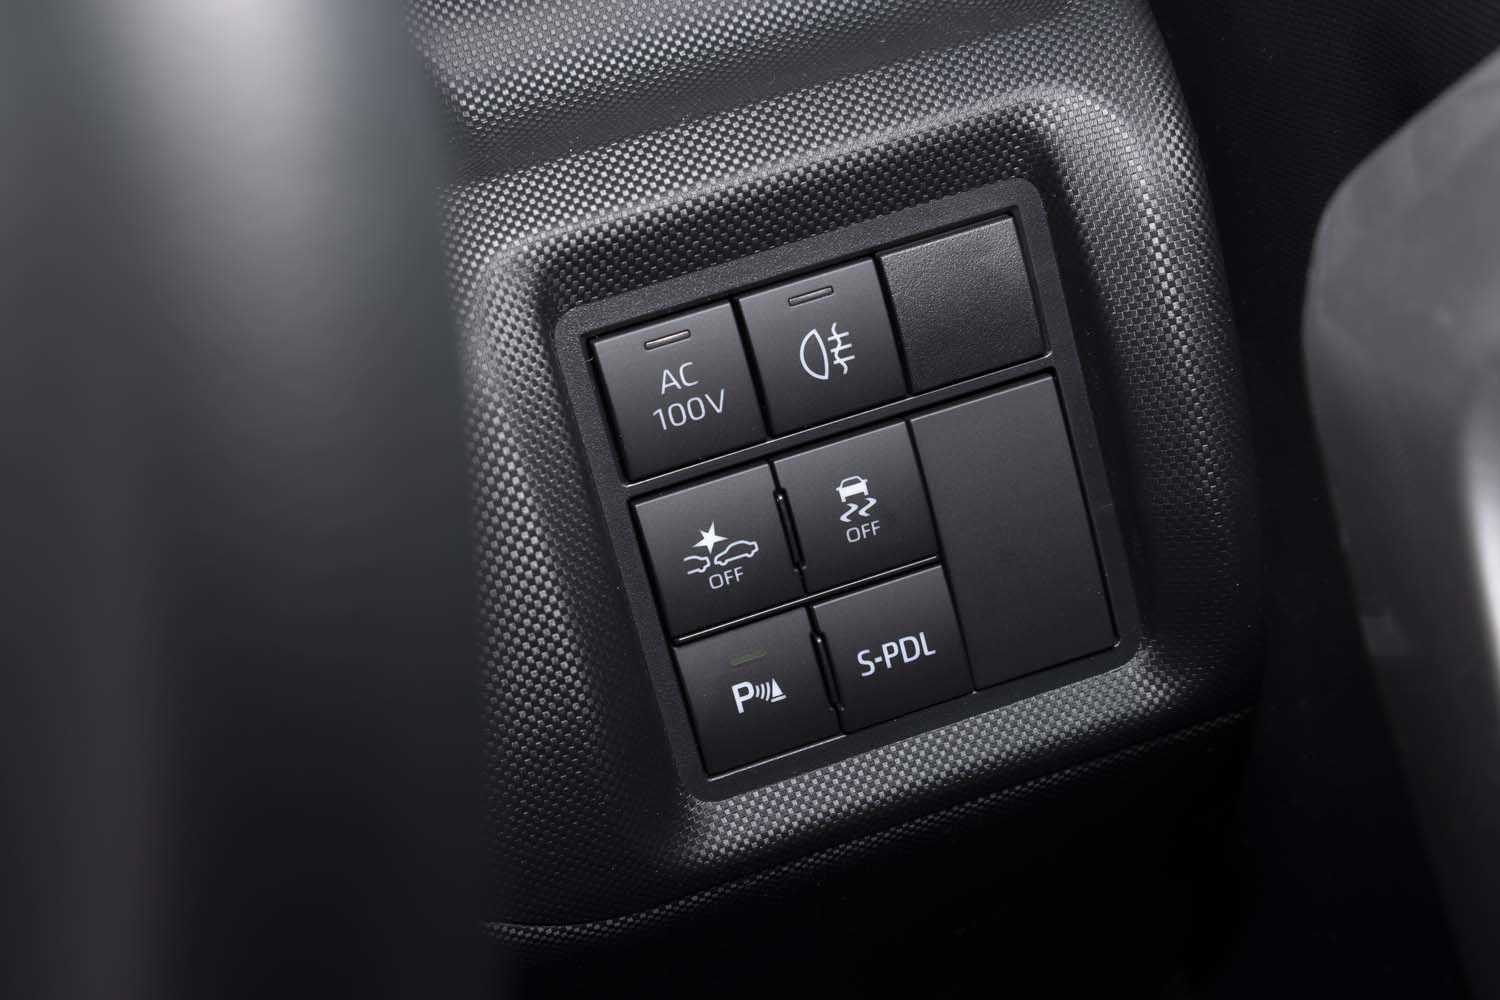 アクセルオフで強い減速力を発生する「スマートペダル」のスイッチはステアリングポストの右側にレイアウト。ステアリングの「DRIVE」ボタンで強弱を変更できる。